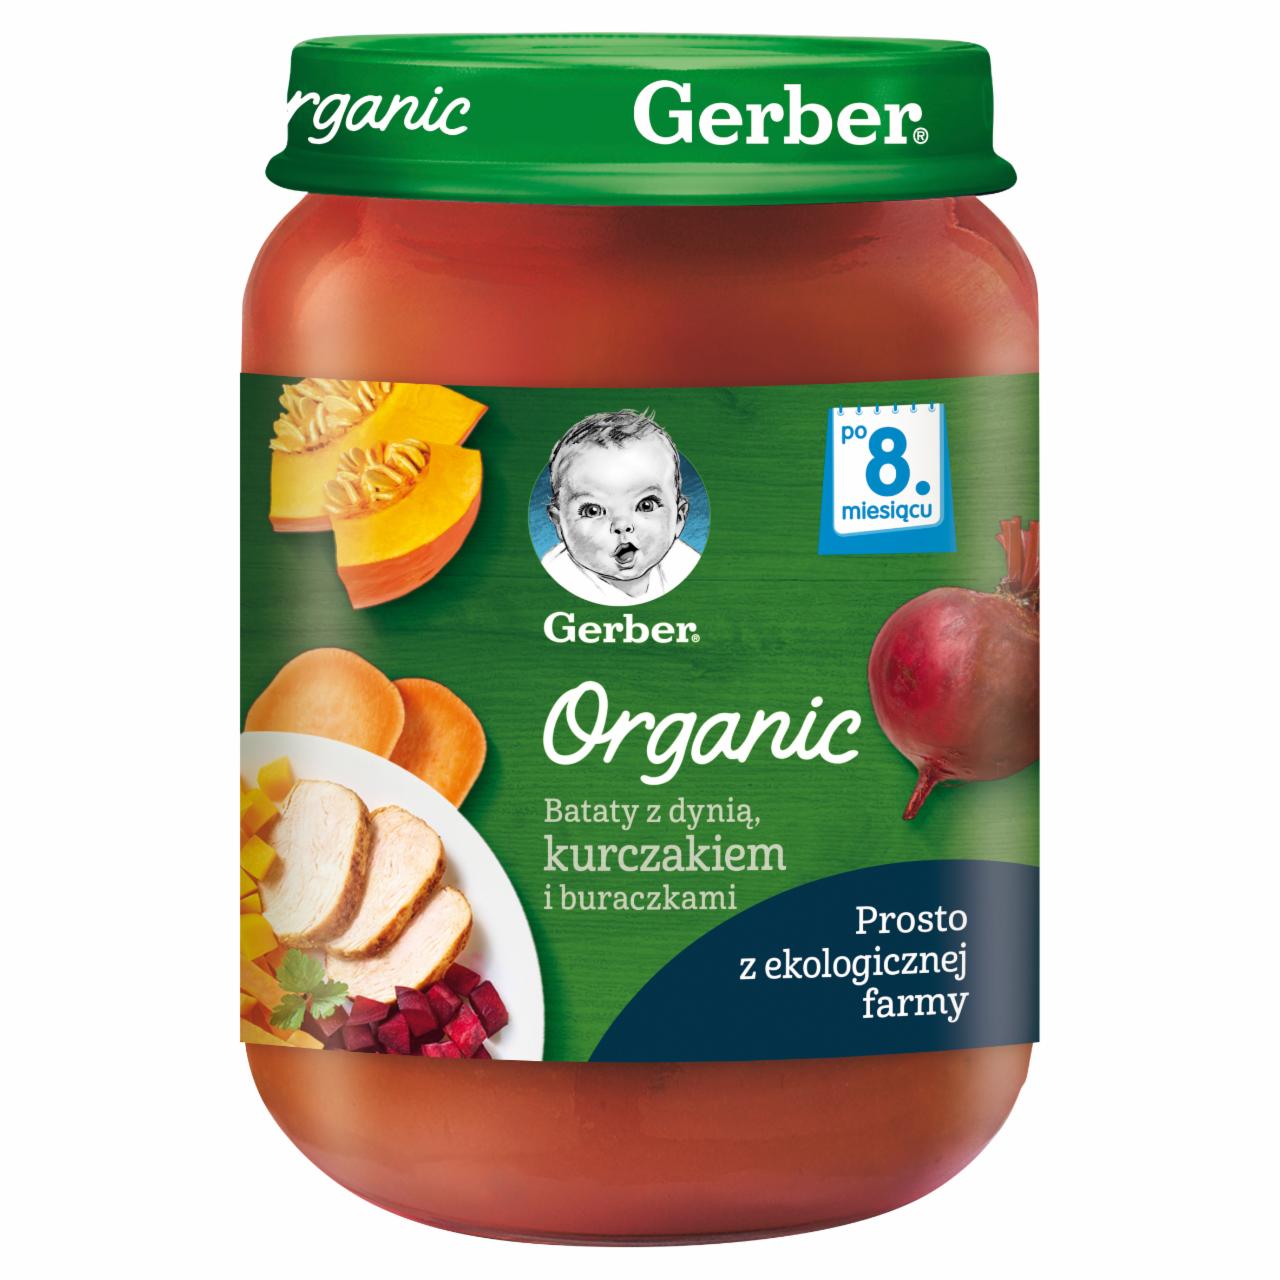 Zdjęcia - Gerber Organic Bataty z dynią kurczakiem i buraczkami dla niemowląt po 8. miesiącu 190 g